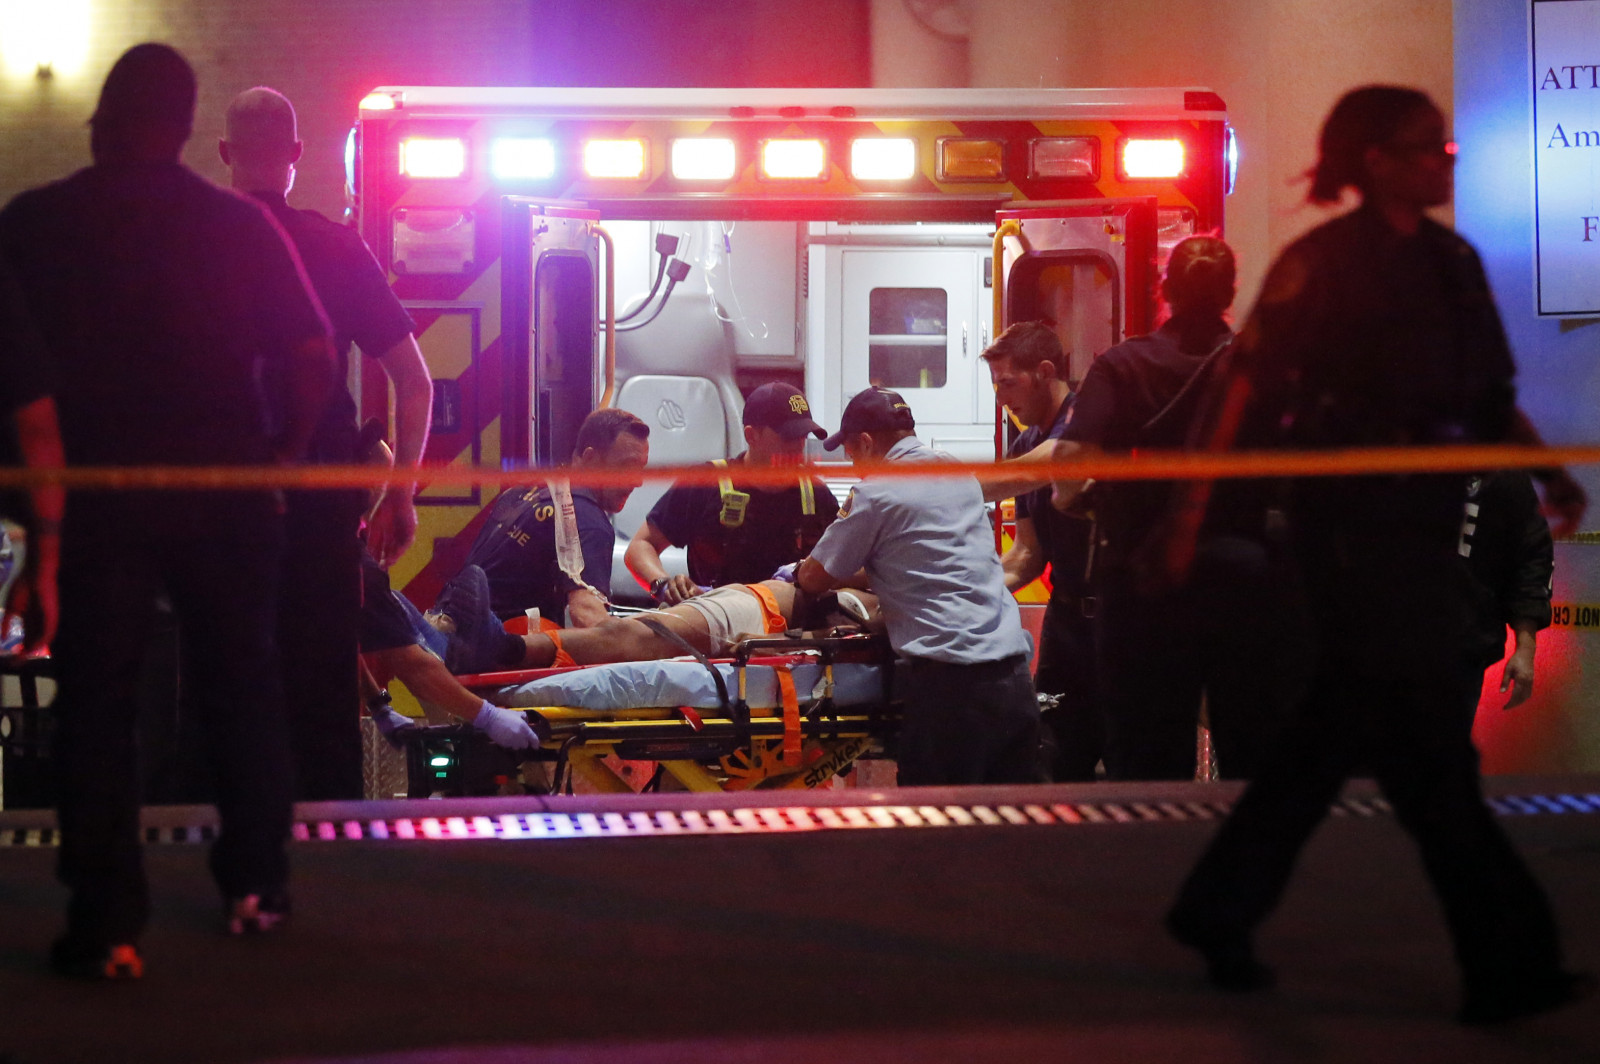 שוטרים מאבטחים אמבולנס בעת ההפגנות בעיר דאלאס. צילום: סוכנות AP